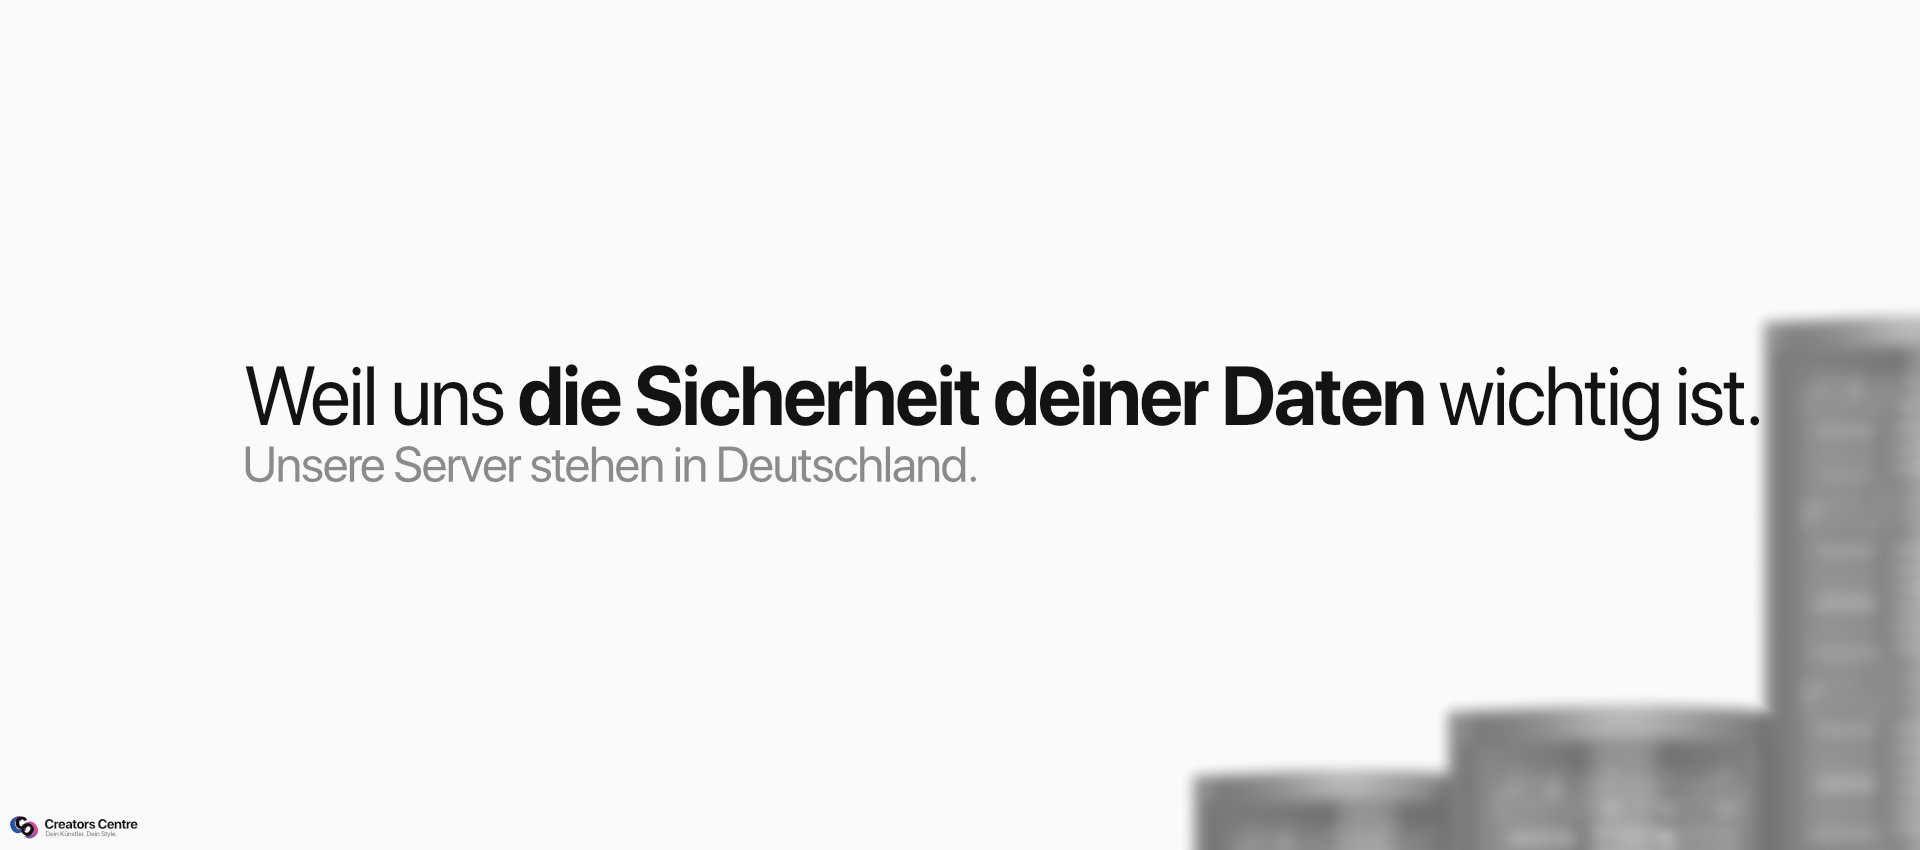 Weil uns deine Datensicherheit wichtig ist. Unsere Sever stehen in Deutschland. | Creators-Centre.de